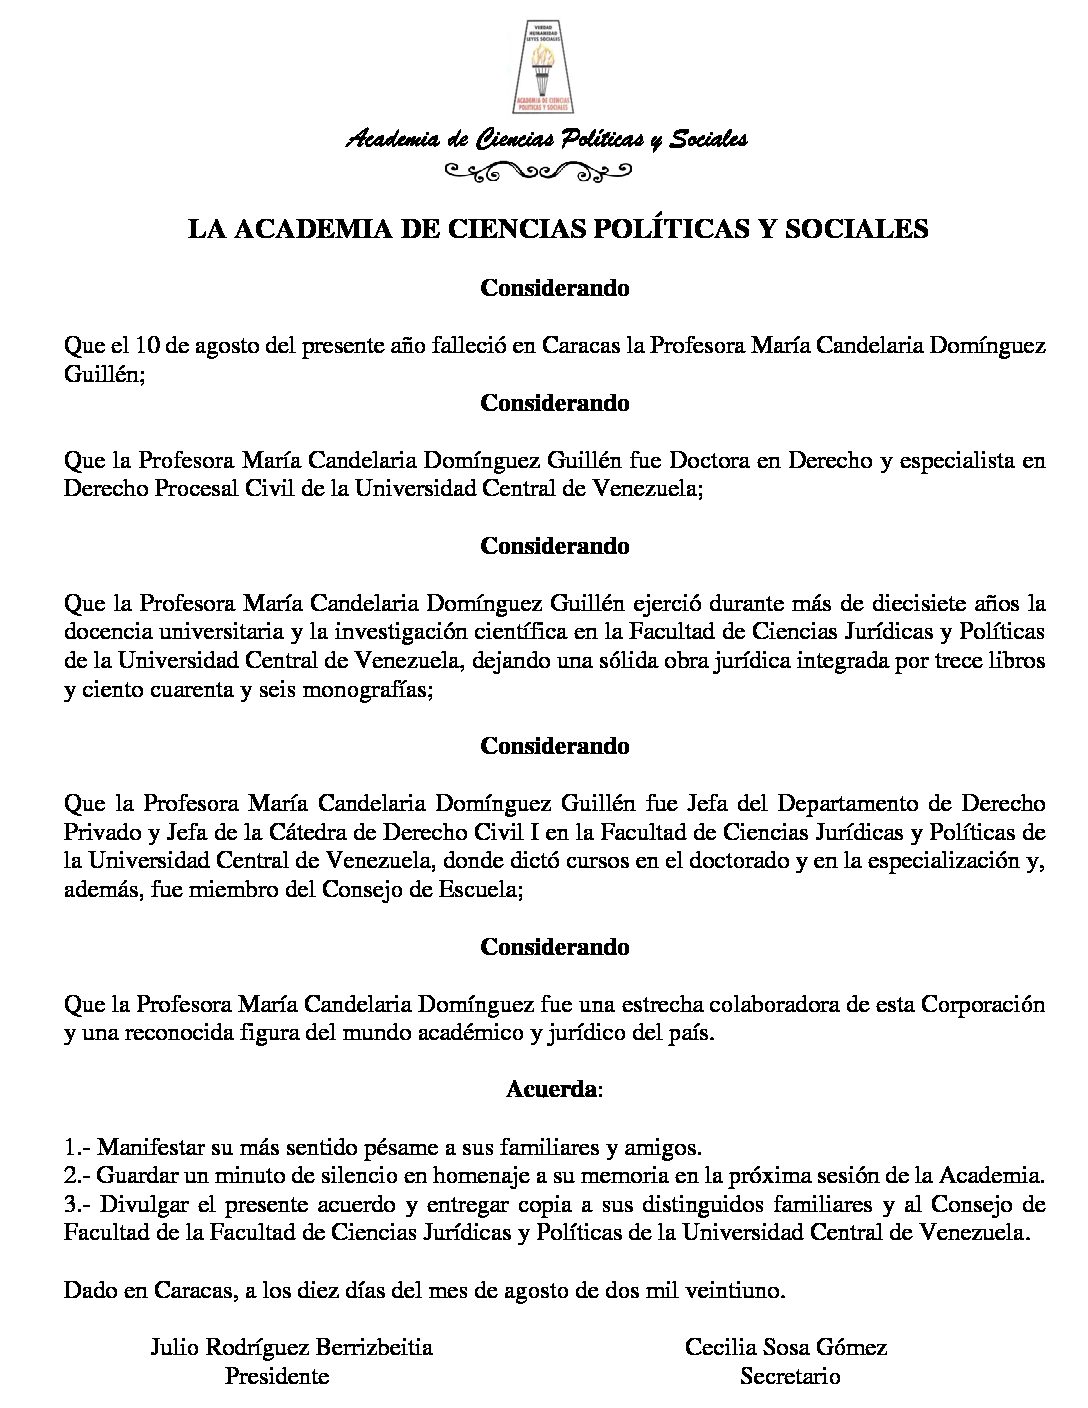 Acuerdo de duelo por el sensible fallecimiento de la Profesora María Candelaria Domínguez Guillén